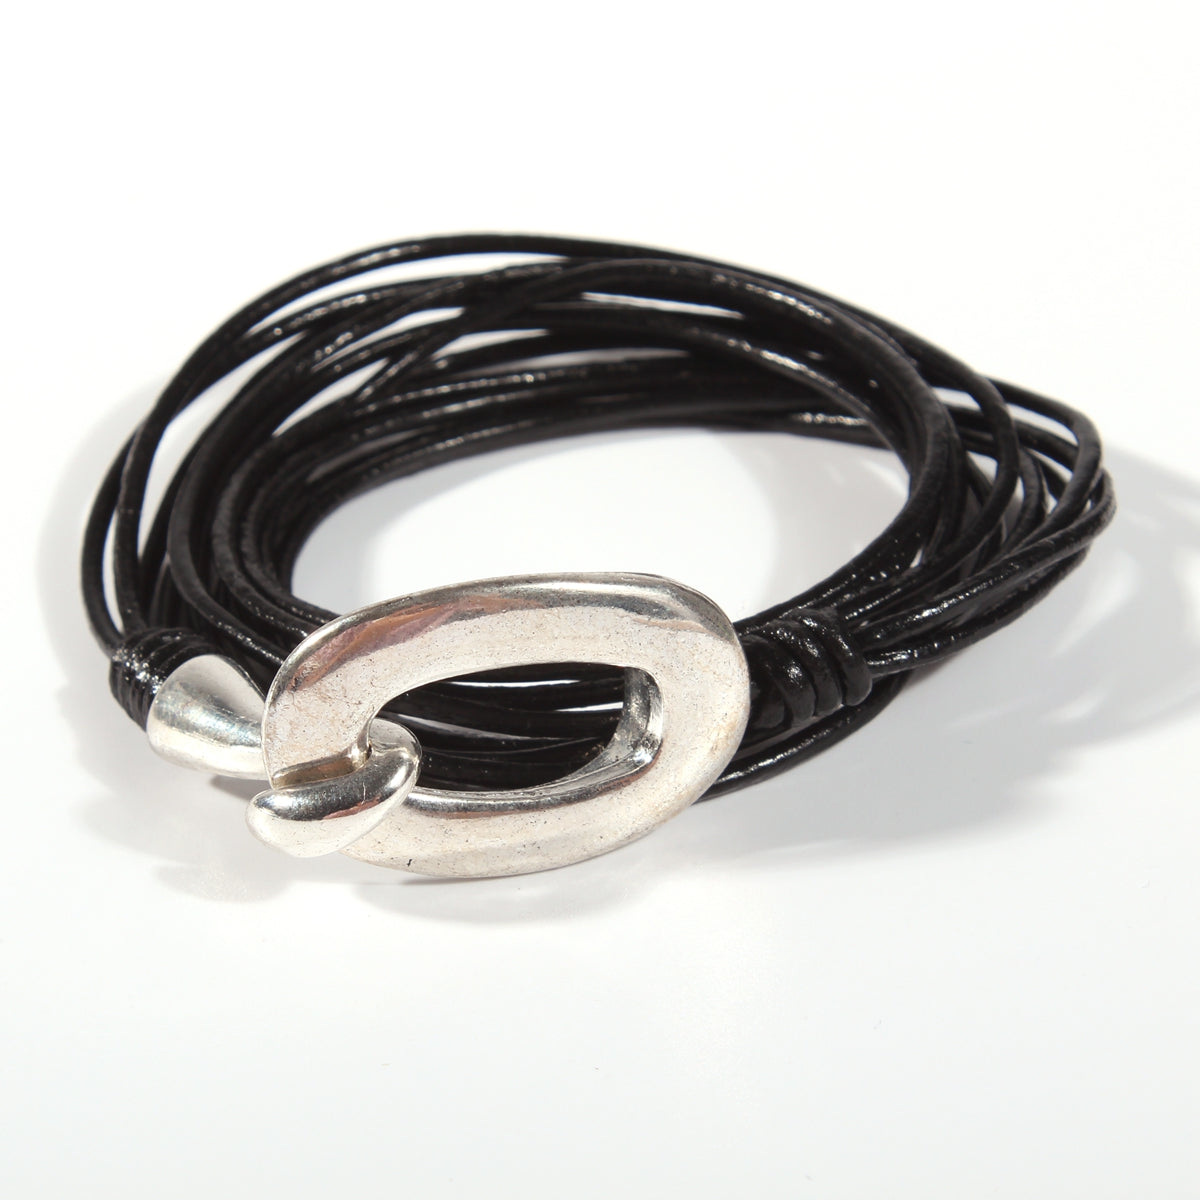 Genuine leather handmade women's bracelet MBR-12